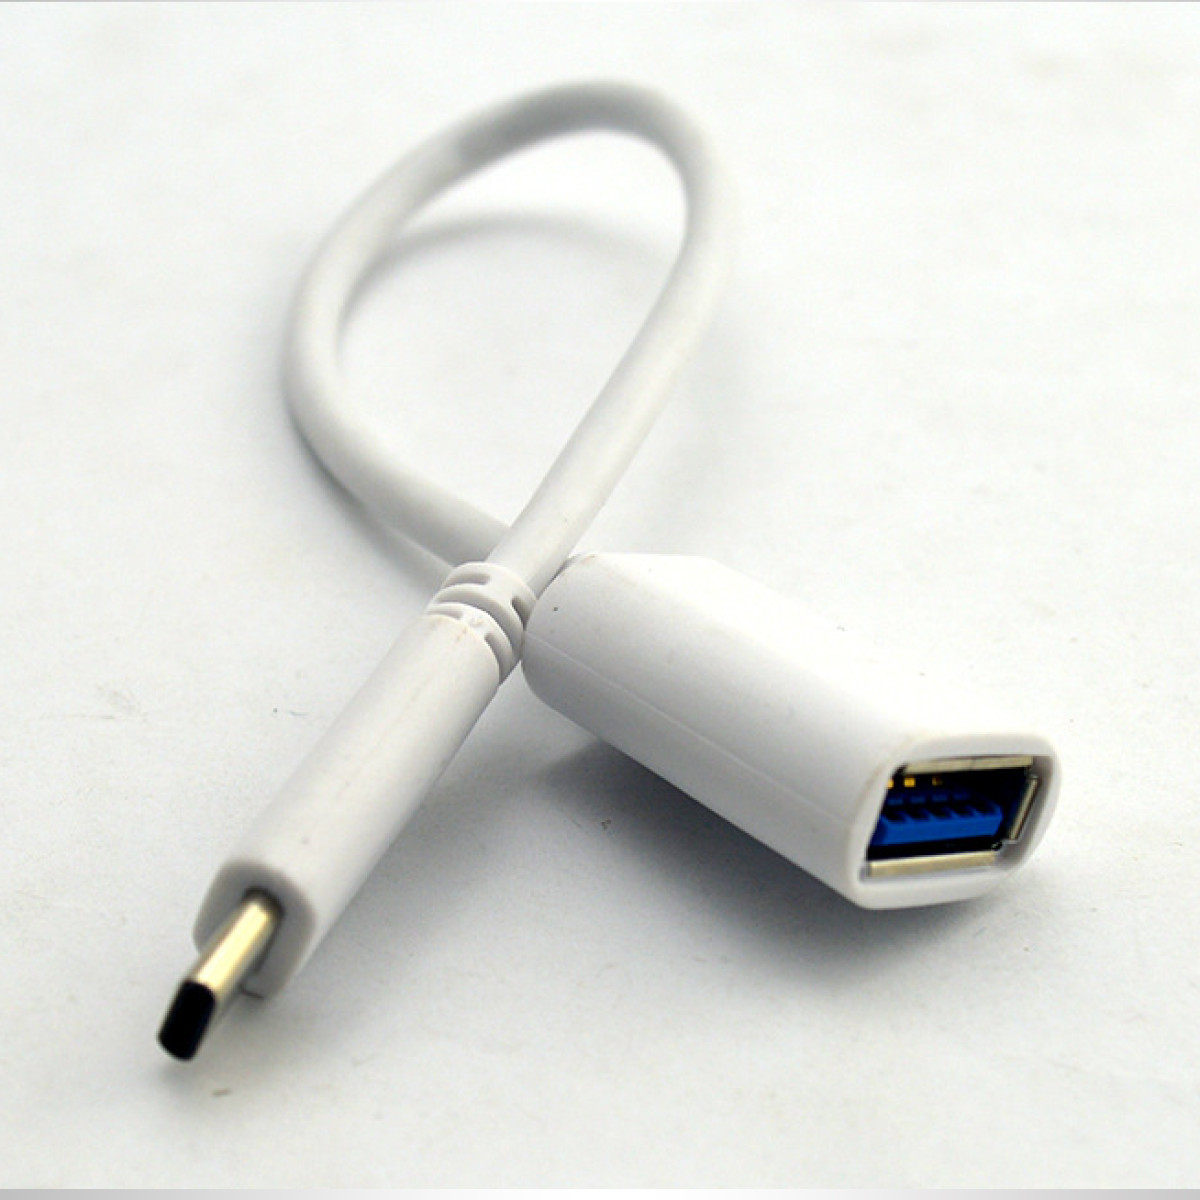 5 Adapter m INF 0,2 USB-C W USB-C OTG-Kabel USB 3.1 60 Gbit/s